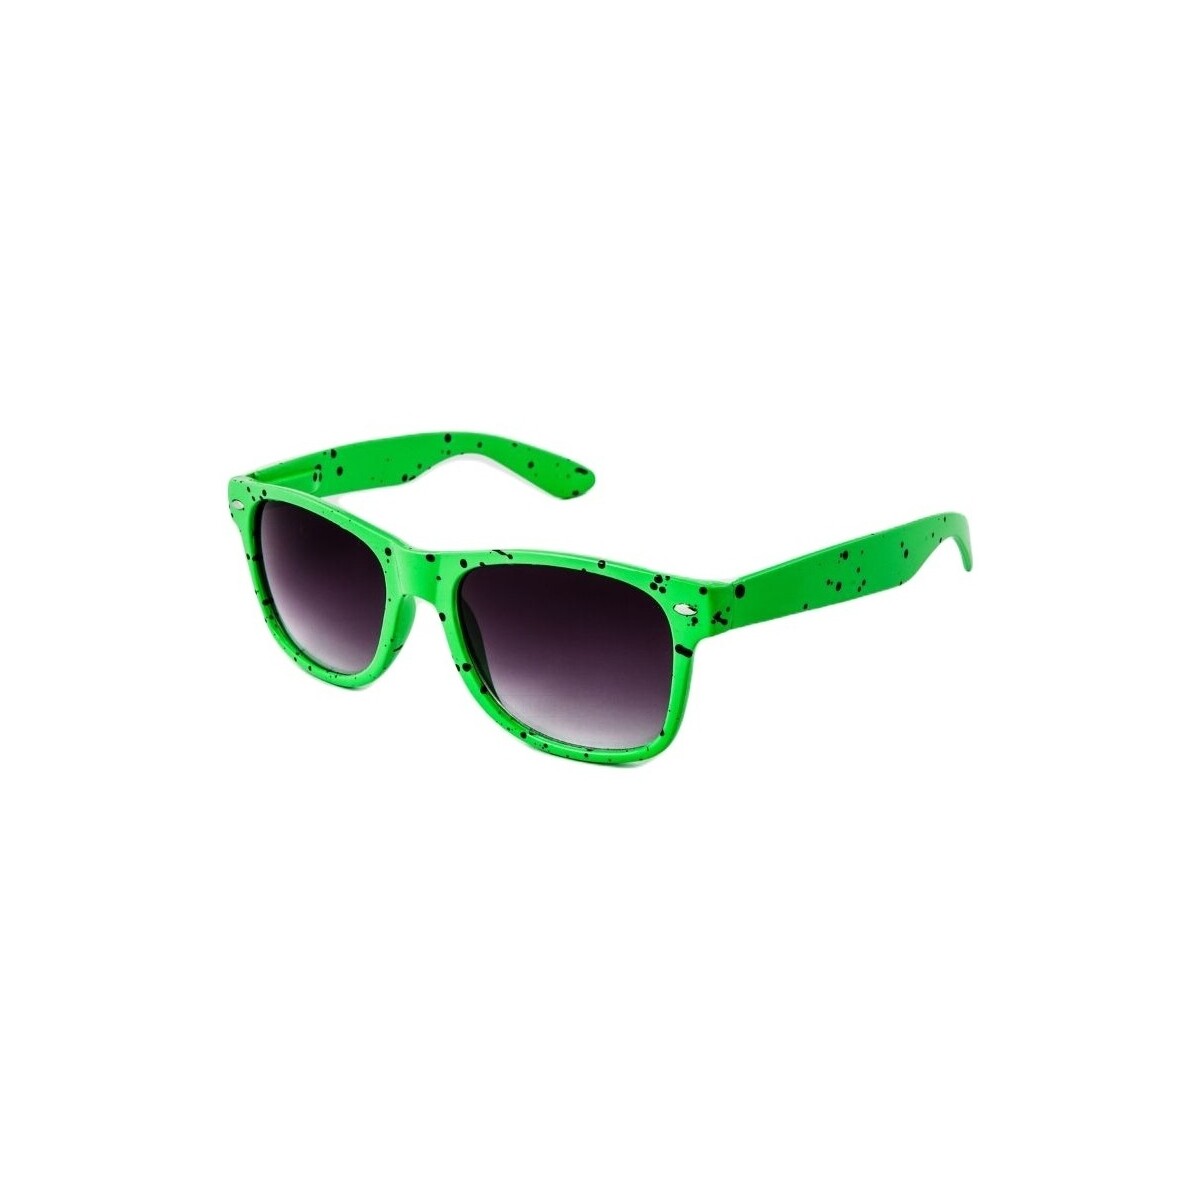 Hodinky & Bižuterie sluneční brýle Oem Sluneční brýle Nerd Kaňka černá Zelená